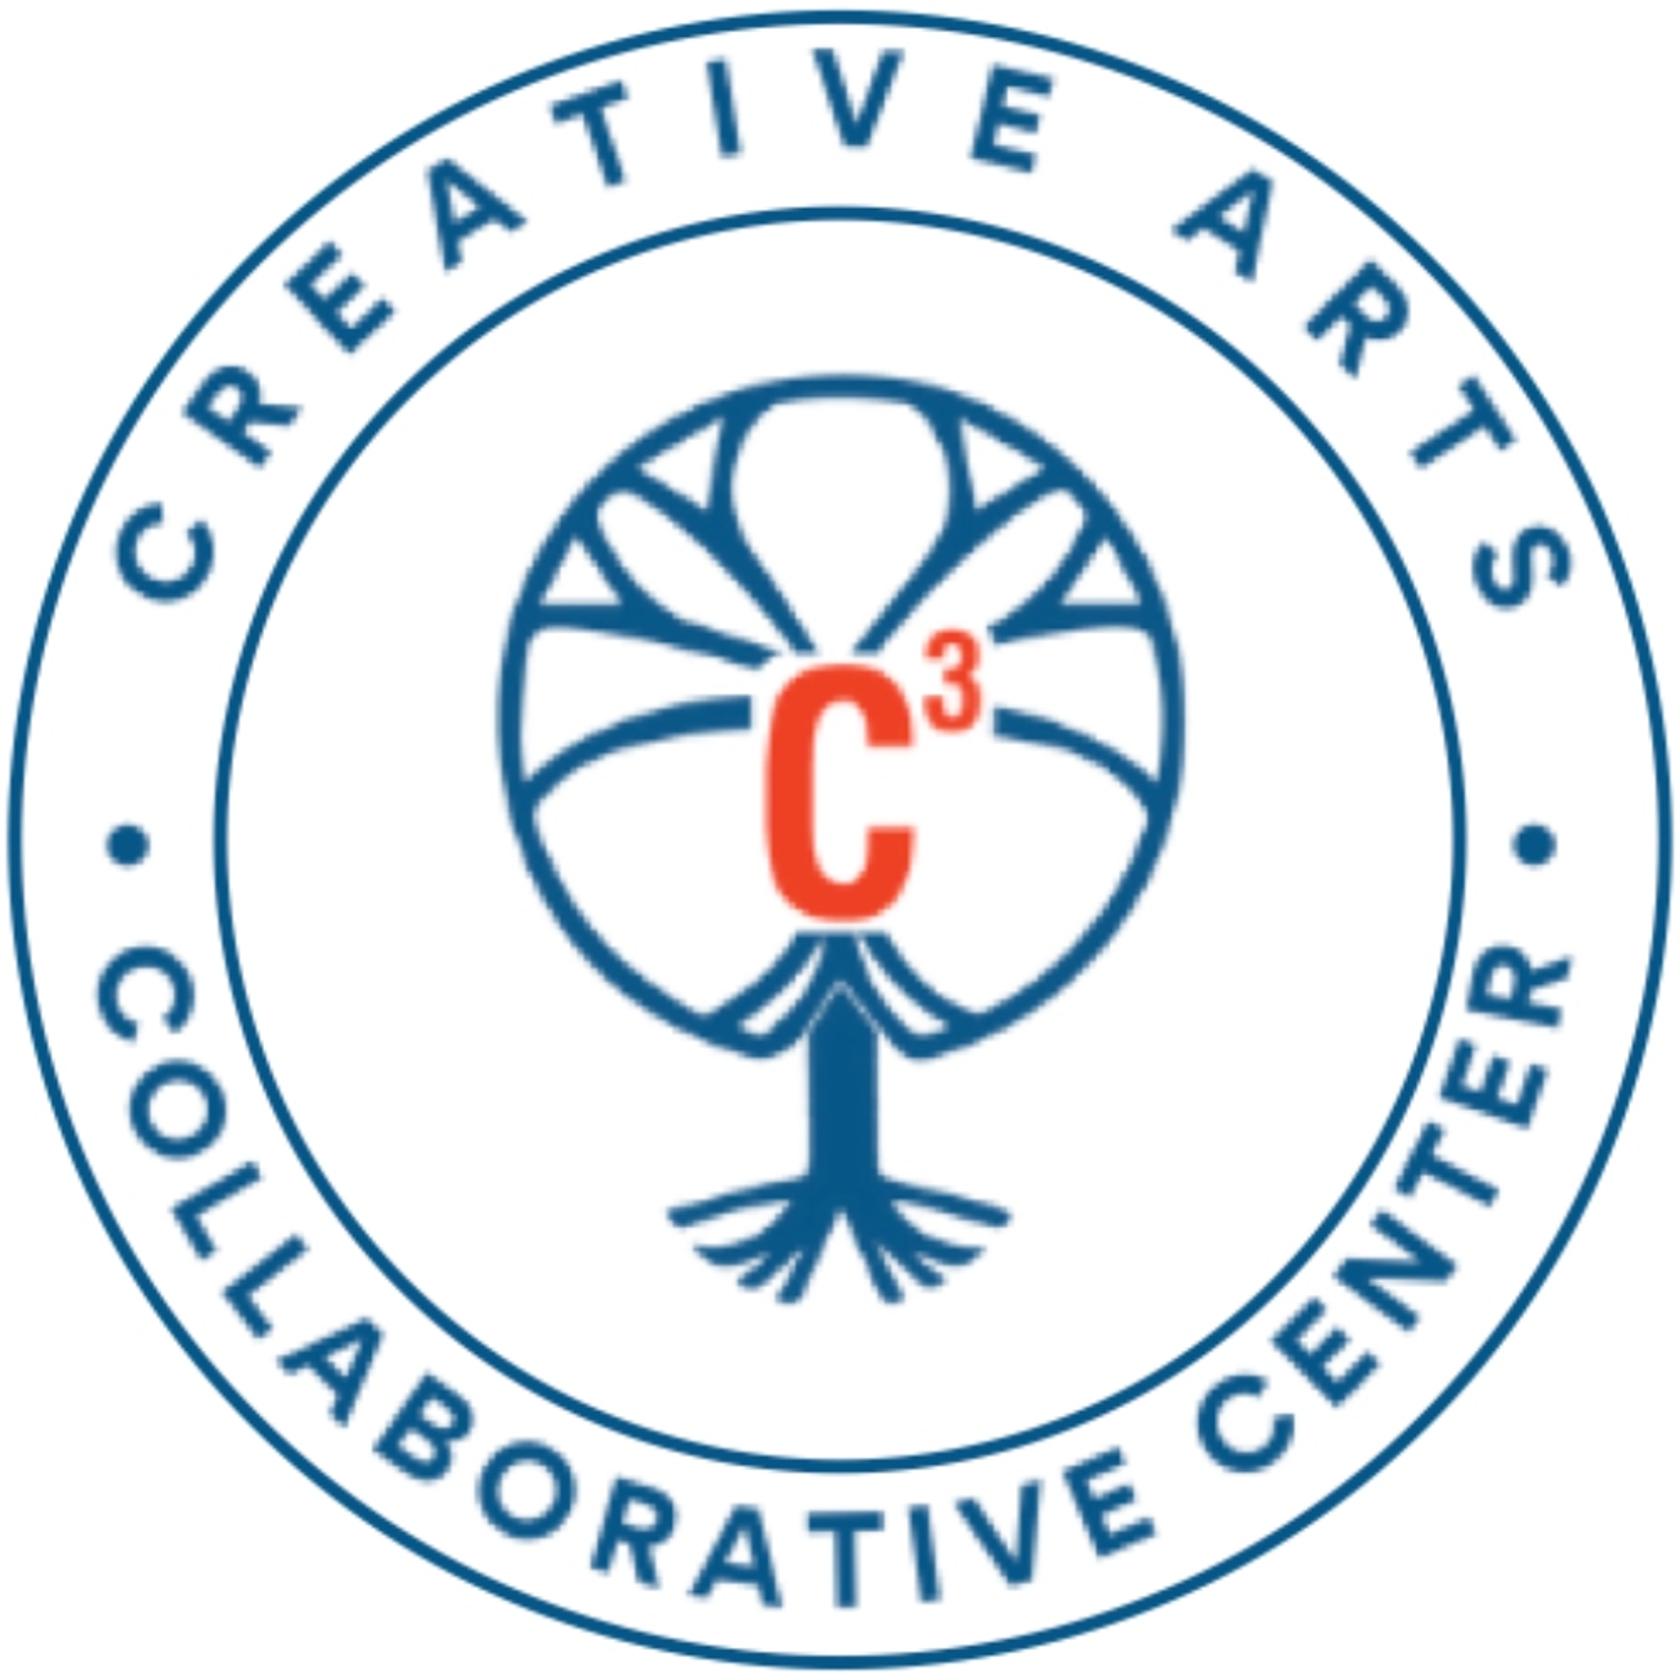 Creative Arts Collaborative Center